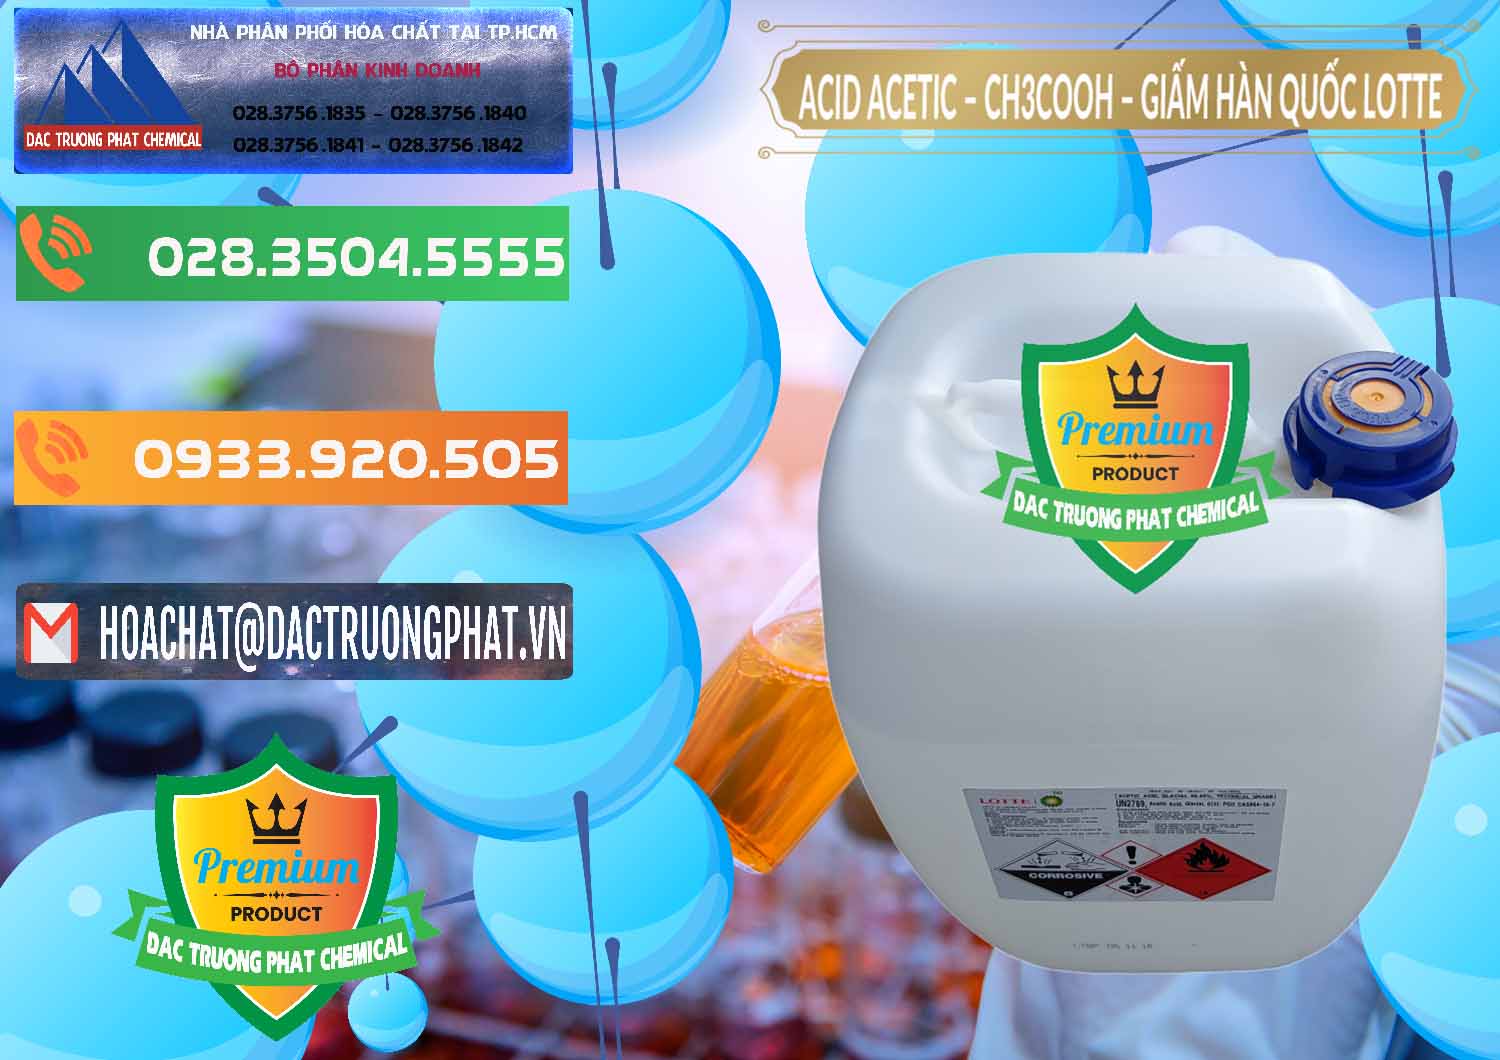 Cty chuyên cung cấp _ bán Acetic Acid – Axit Acetic Hàn Quốc Lotte Korea - 0002 - Chuyên phân phối ( cung cấp ) hóa chất tại TP.HCM - hoachatxulynuoc.com.vn